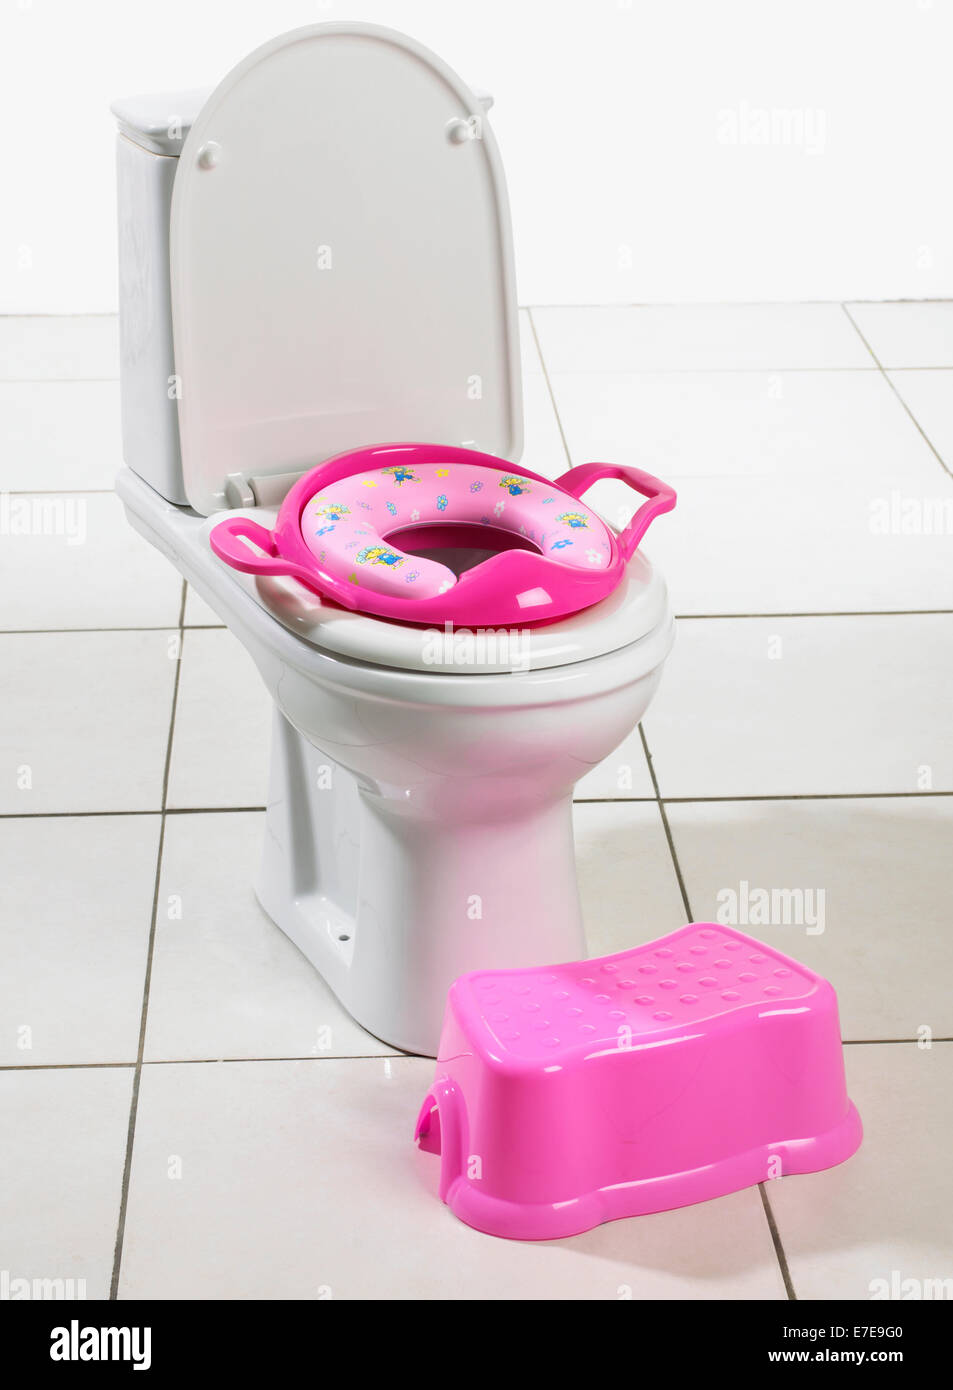 Toilette mit Sitz für Kleinkind Stockfoto